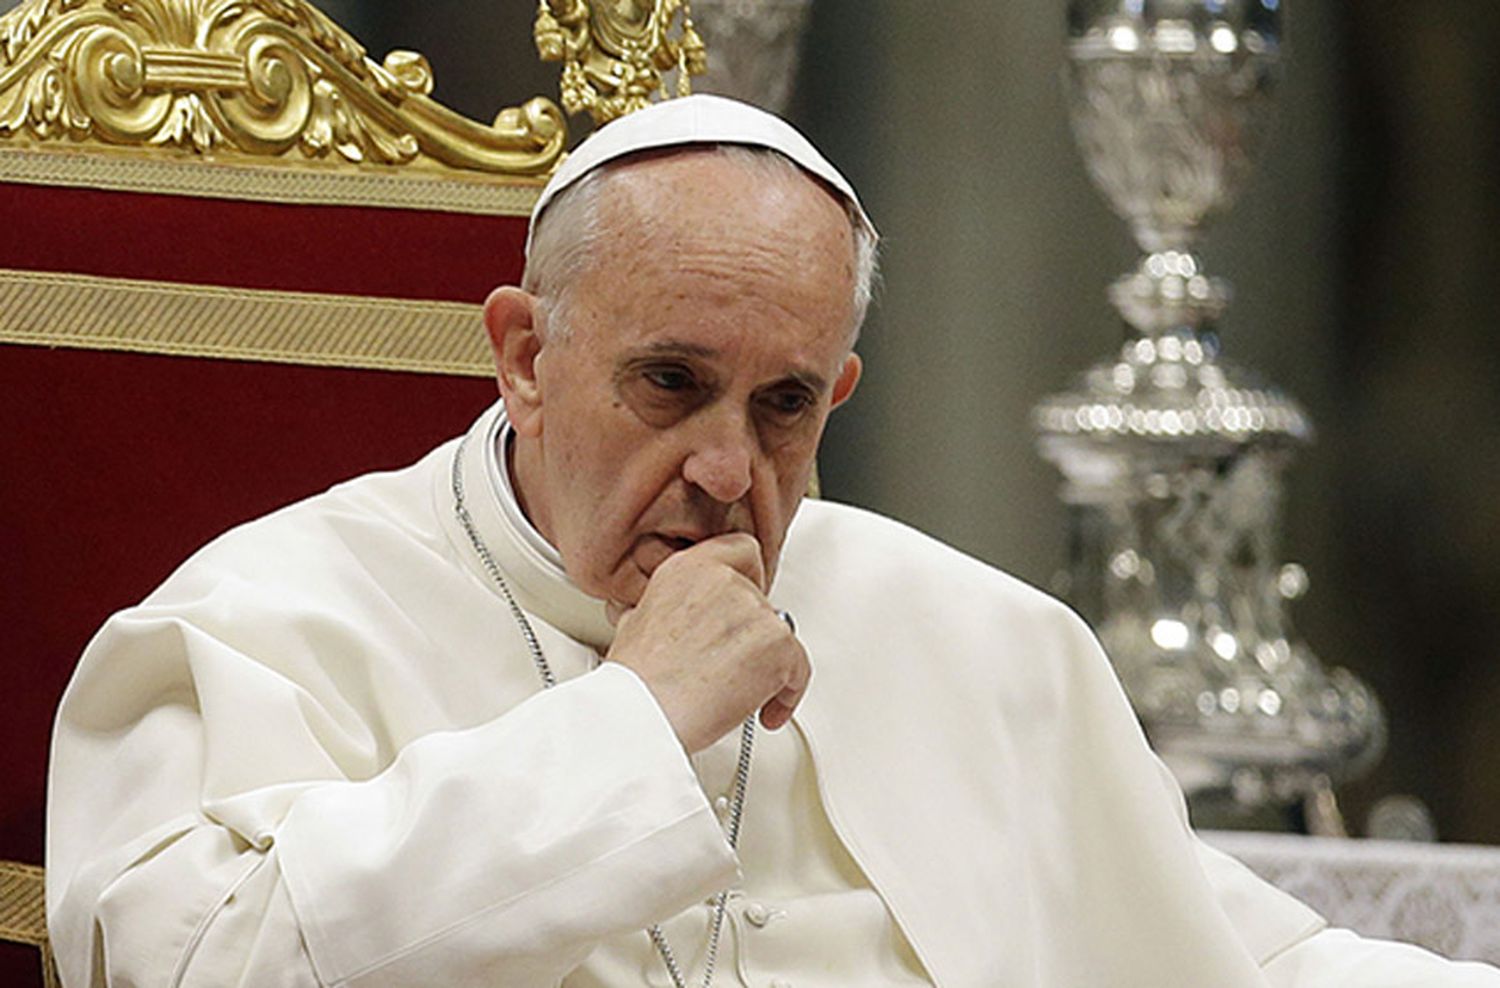 El Papa pidió rezar por las víctimas de coronavirus enterradas en fosas comunes